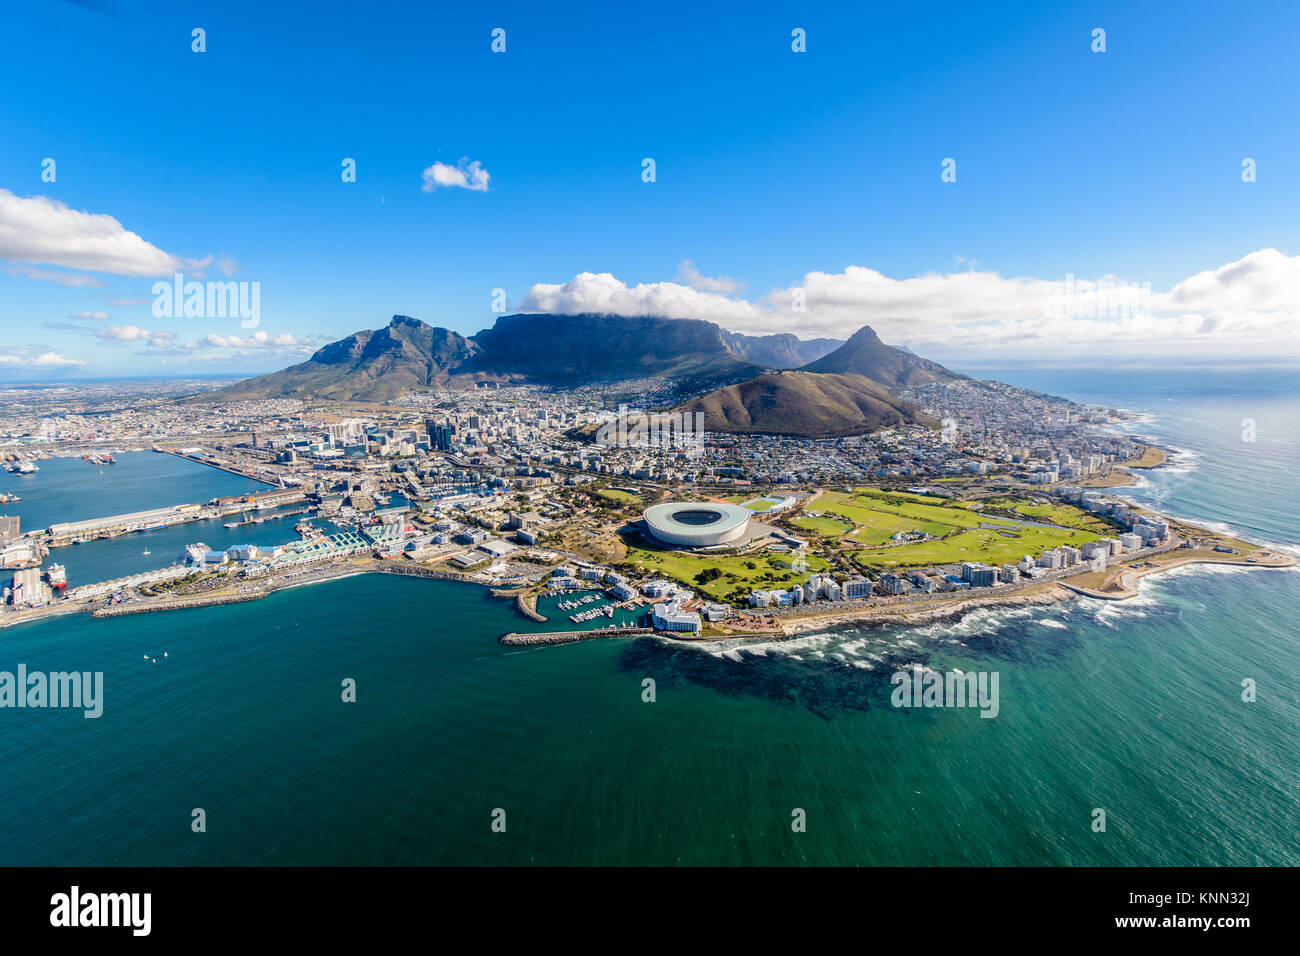 Vue aérienne de la ville du Cap, Afrique du Sud sur un après-midi ensoleillé. Photo prise depuis un hélicoptère pendant air tour de Cape Town Banque D'Images